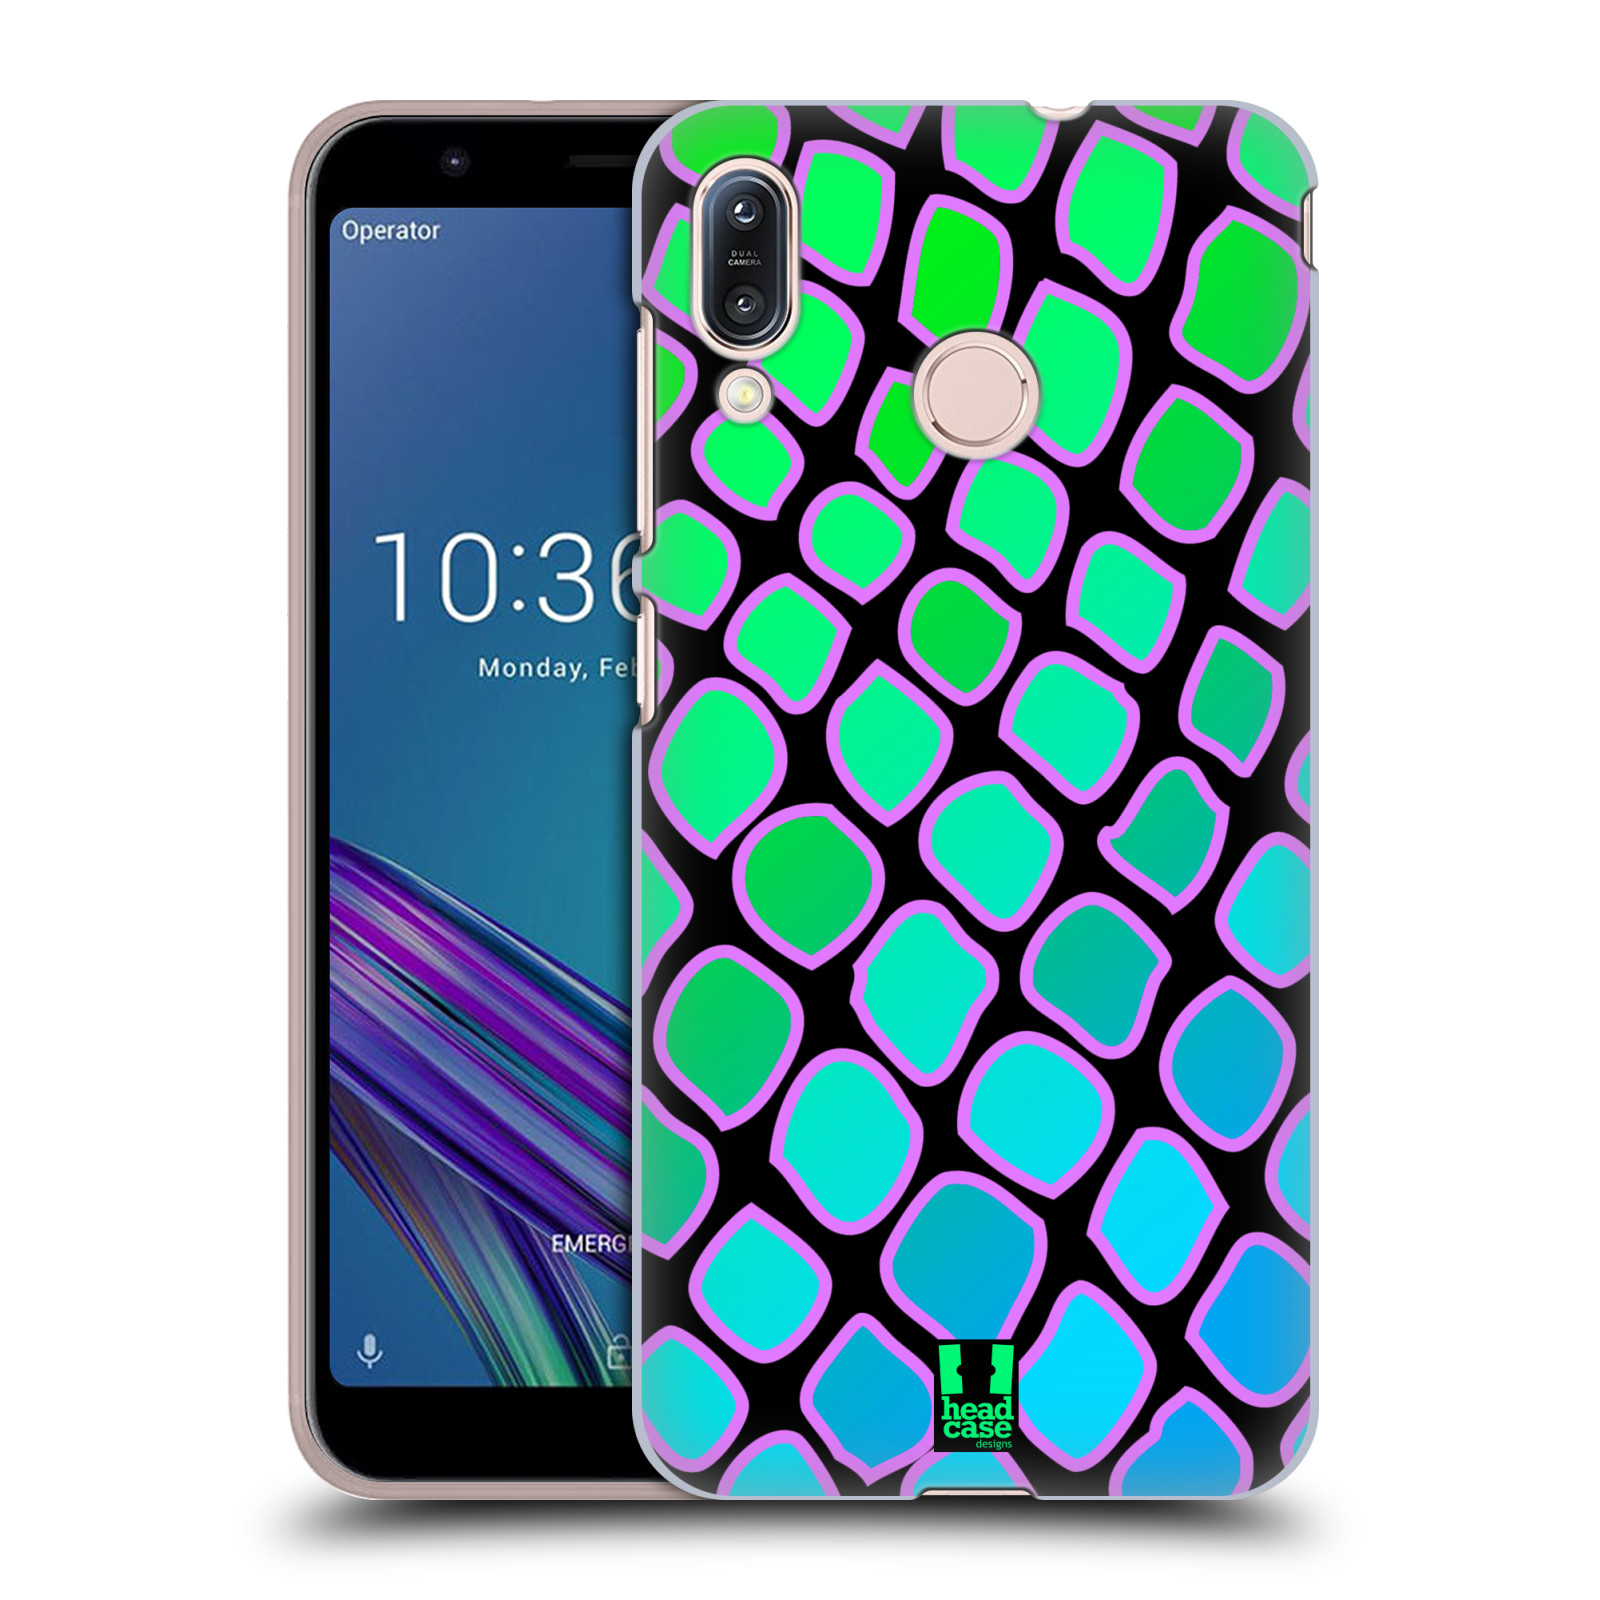 Pouzdro na mobil Asus Zenfone Max M1 (ZB555KL) - HEAD CASE - vzor Divočina zvíře  modrý had